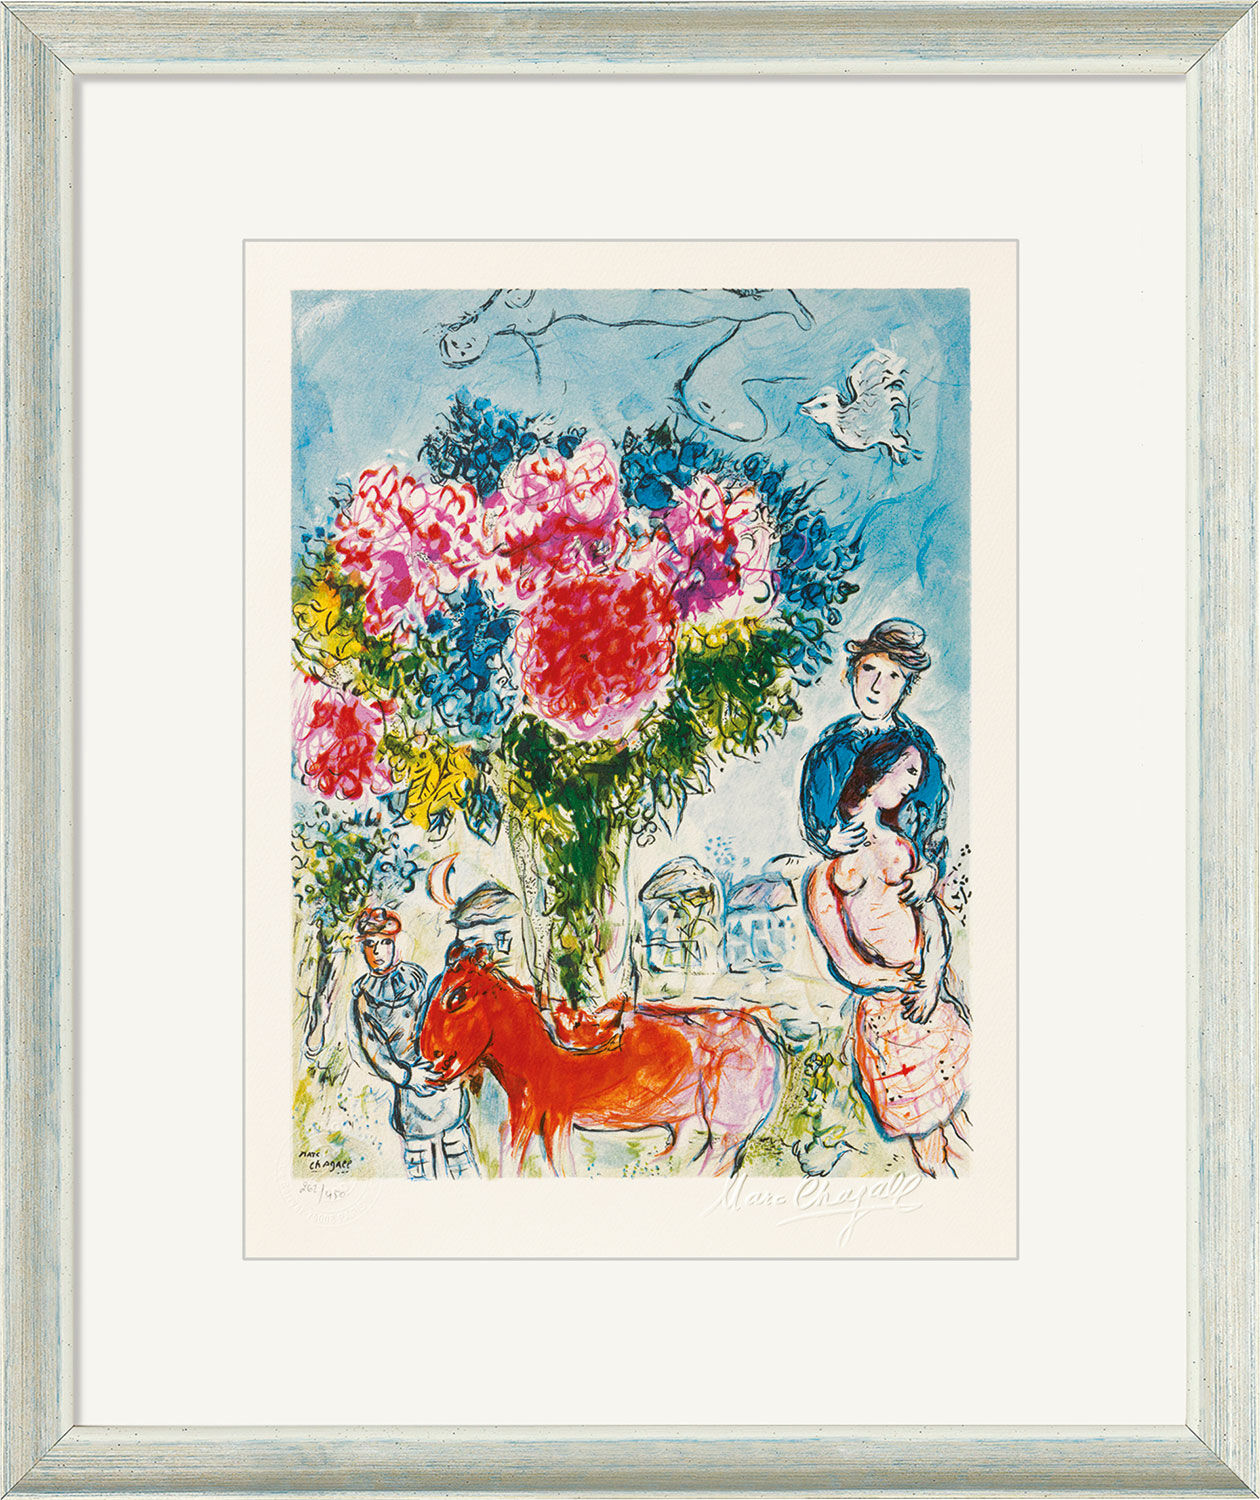 Bild "Personnages fantastiques" (1974), gerahmt von Marc Chagall